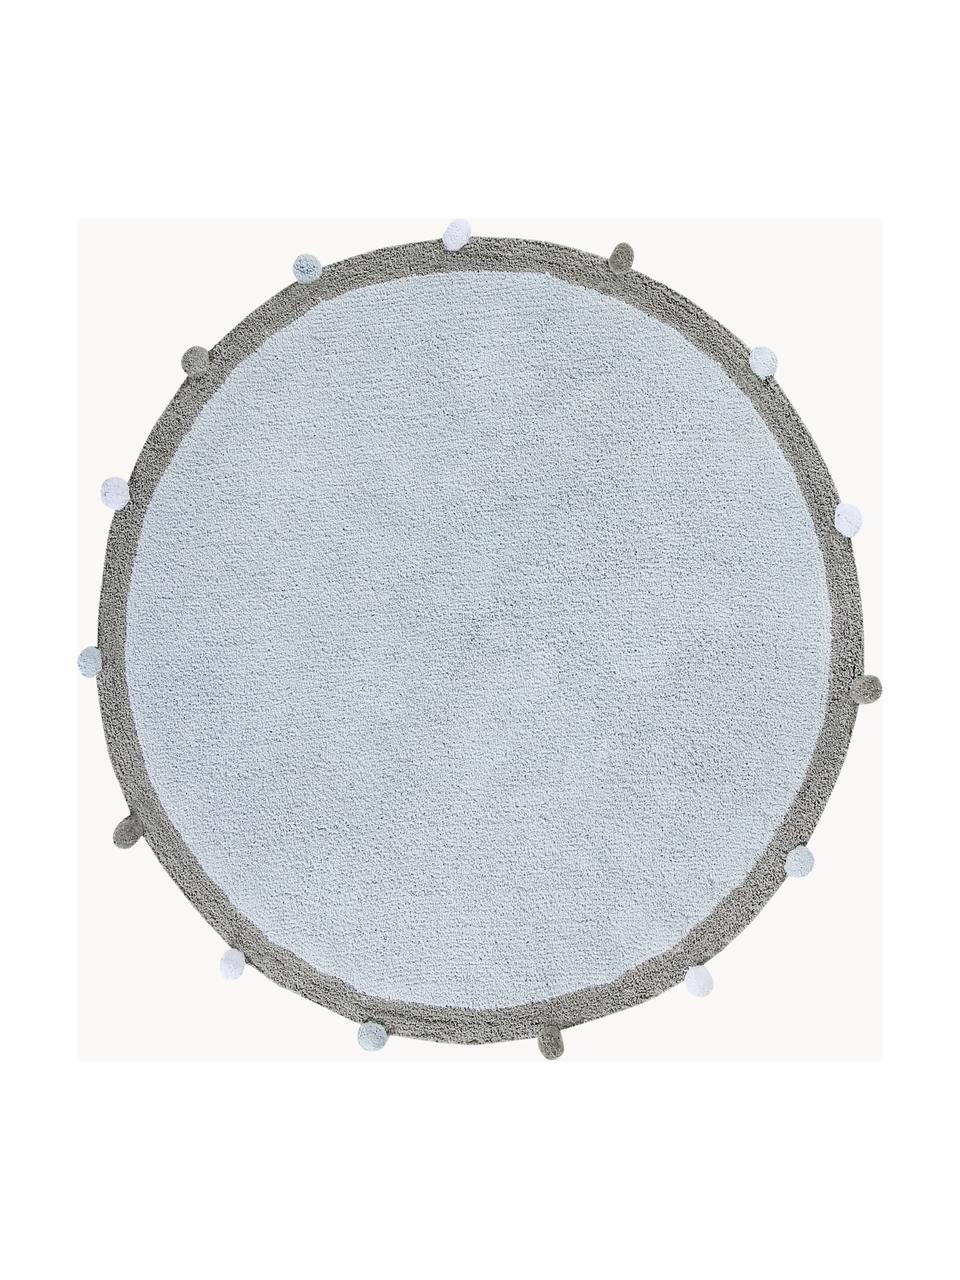 Handgeweven kindervloerkleed Pompom, wasbaar, Bovenzijde: 97% katoen, 3% kunstvezel, Onderzijde: 100% katoen, Lichtblauw, grijs, Ø 120 cm (maat S)